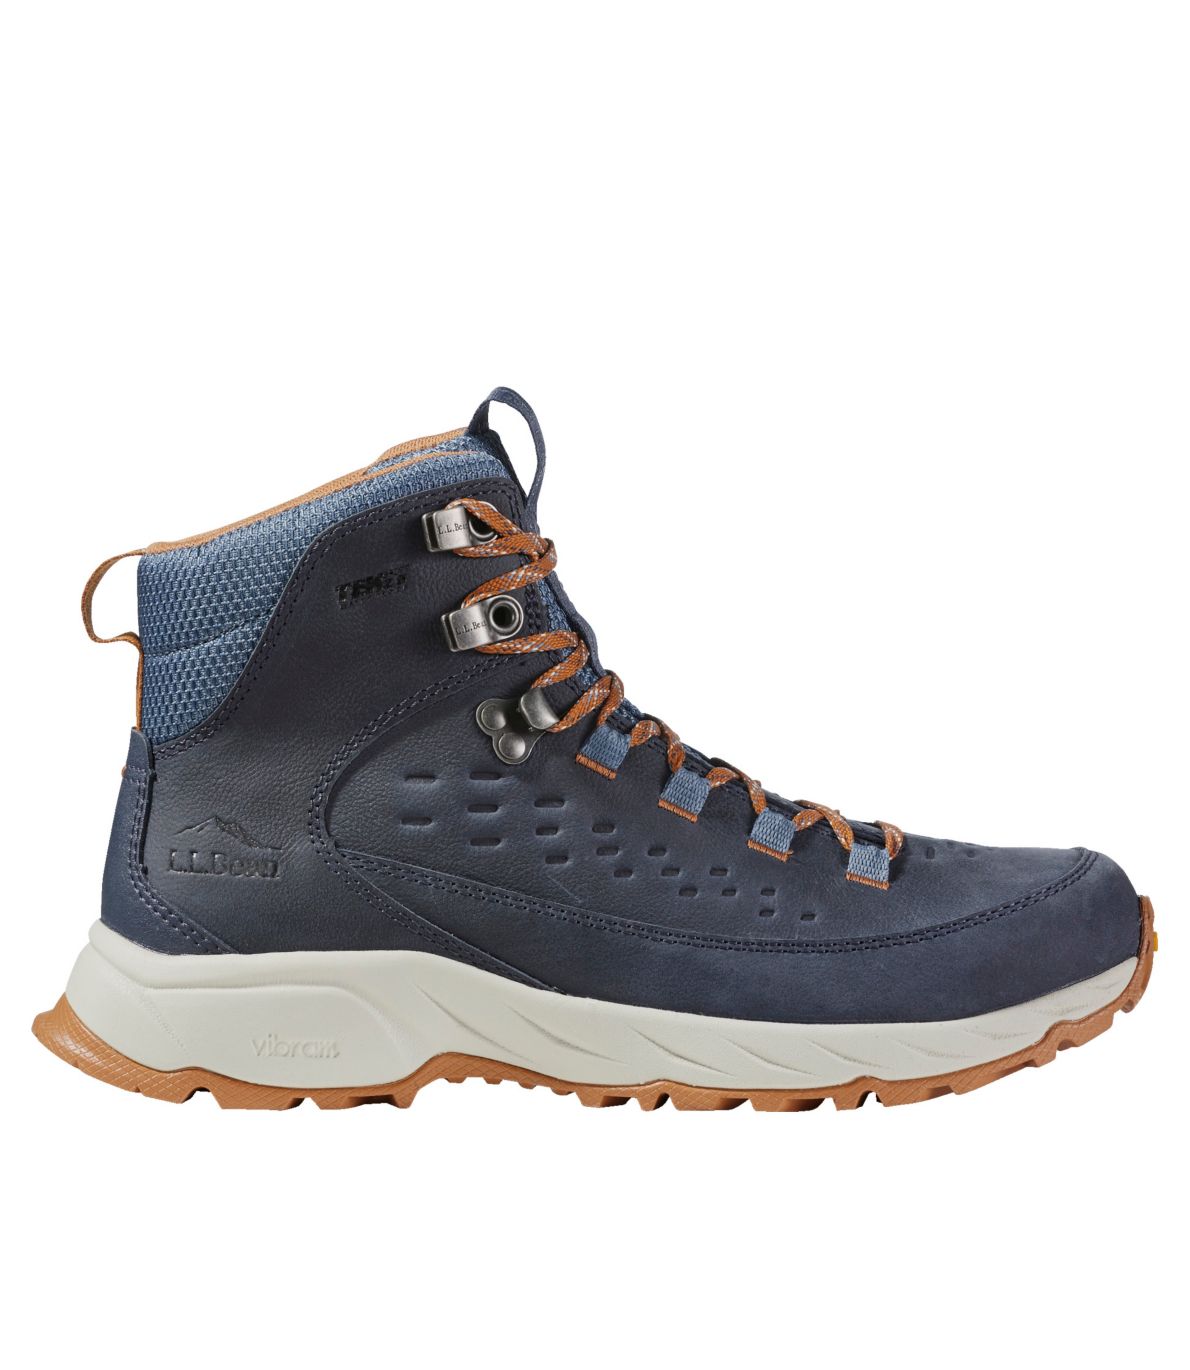 Men's Trailfinder Hiking Boots